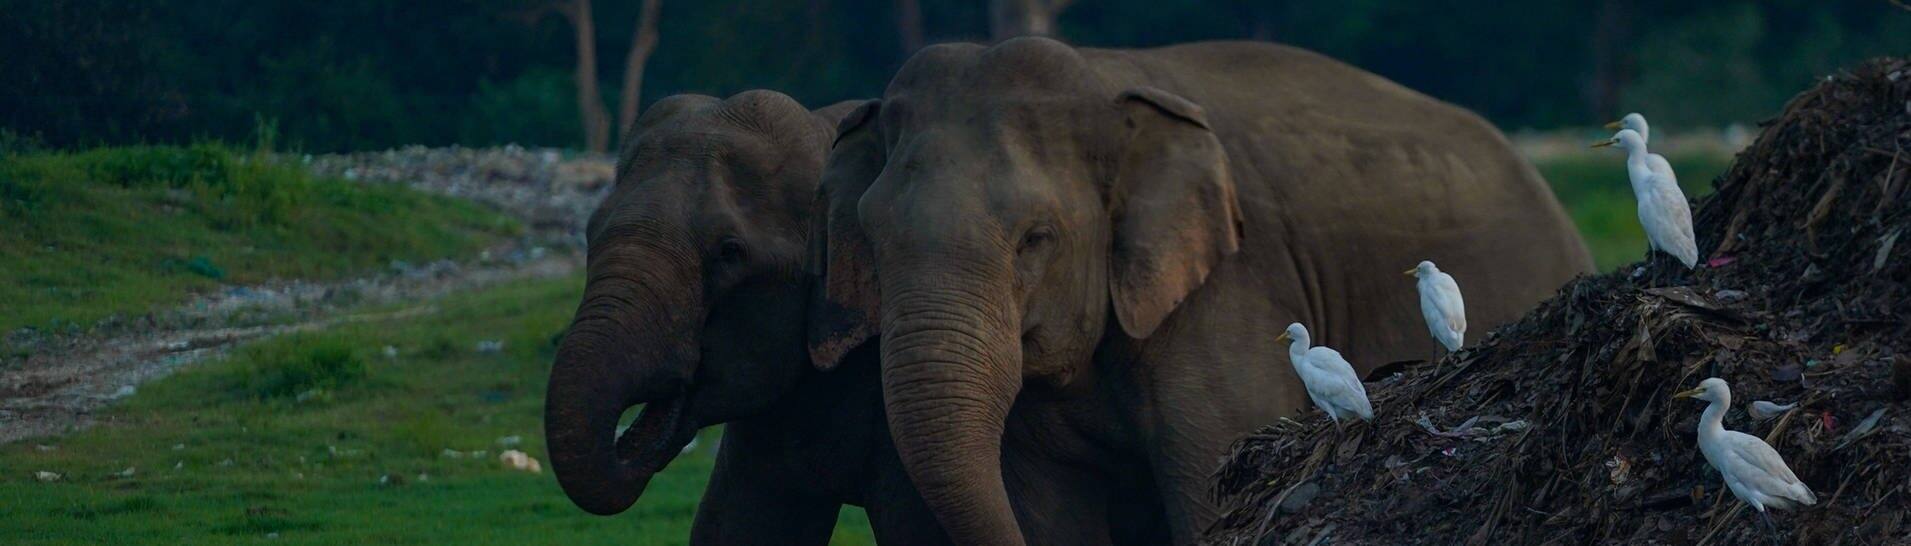 Elefanten in Sri Lanka fressen auf einer Müllhalde. (Foto: IMAGO, IMAGO / NurPhoto)